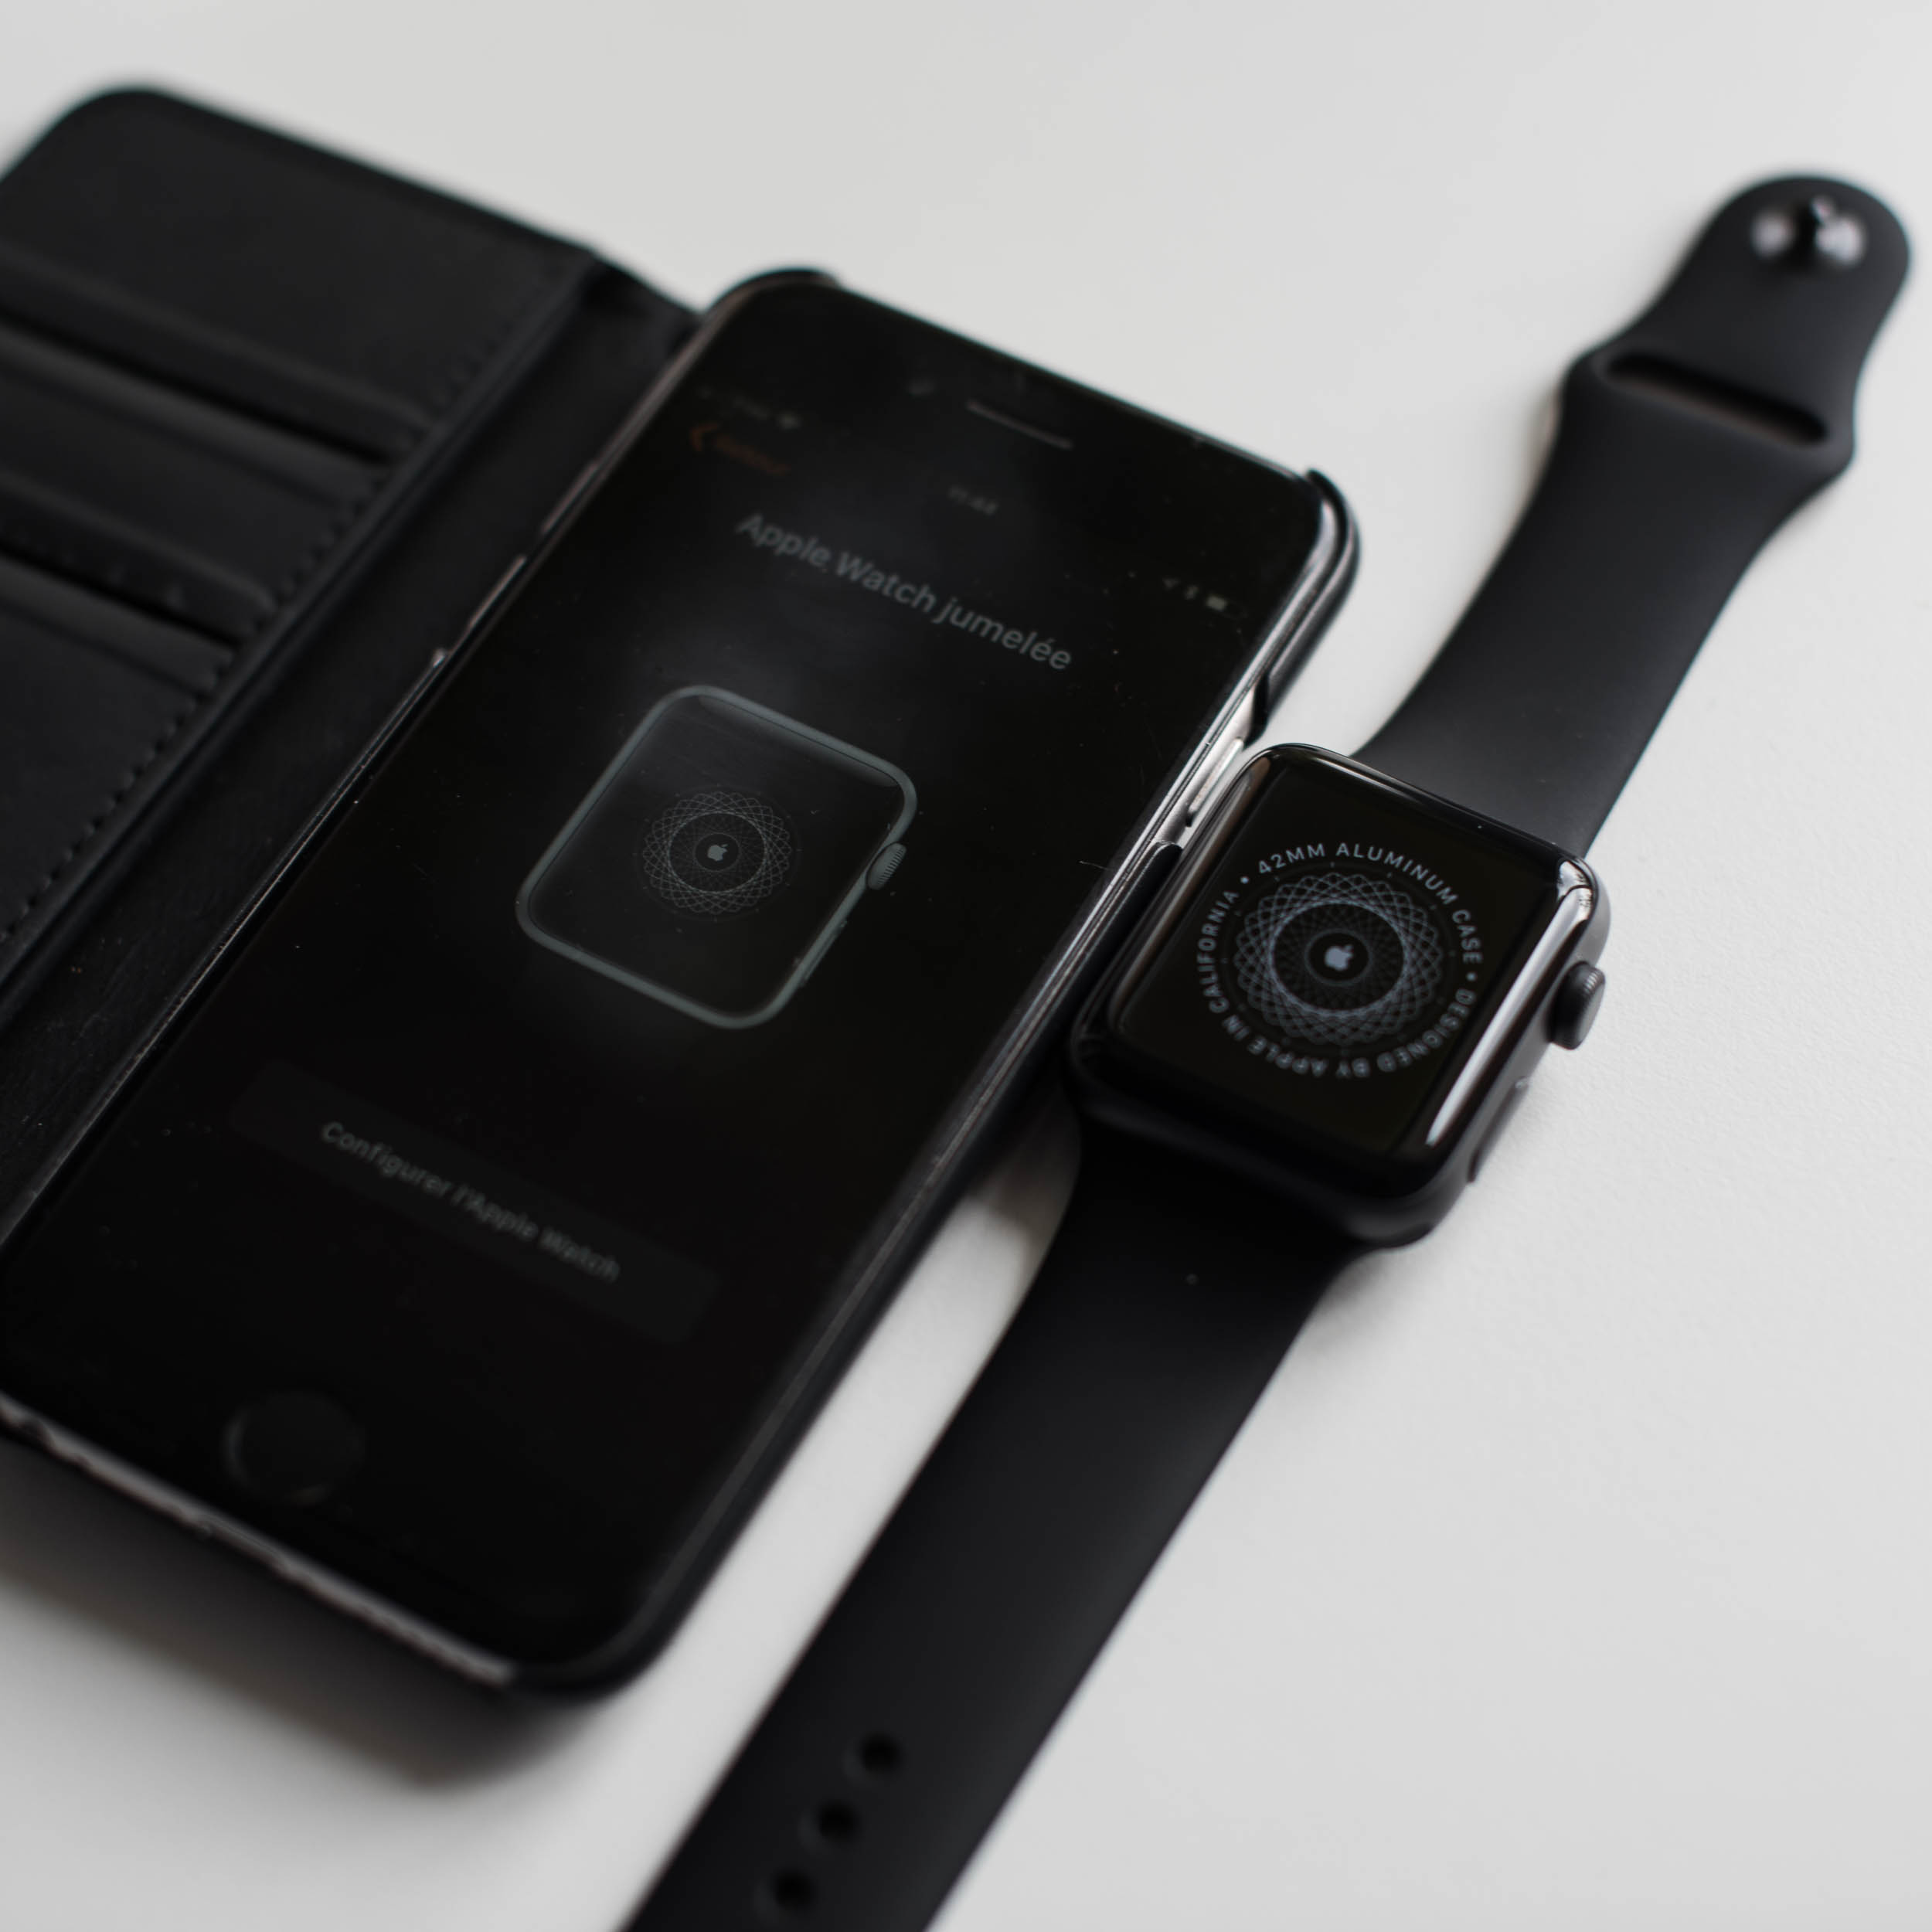 Apple Watch série 3 – Jumelage avec l’iPhone